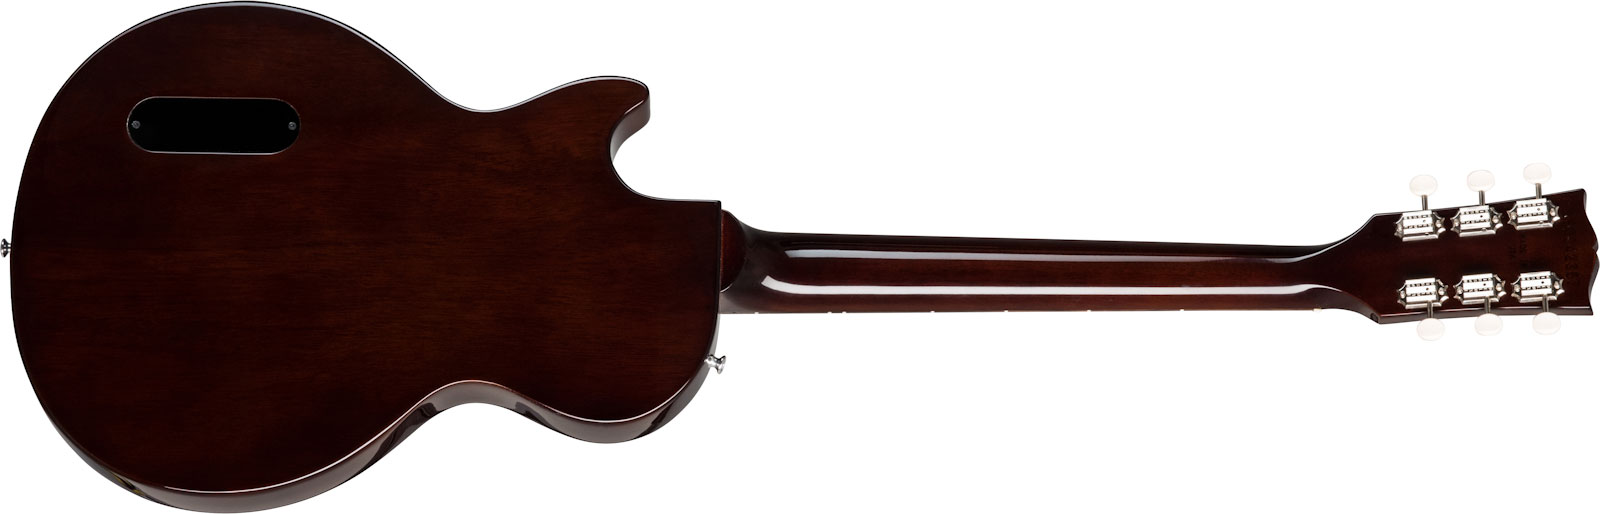 Gibson Les Paul Special Lh Original Gaucher 2p90 Ht Rw - Vintage Tobacco Burst - E-Gitarre für Linkshänder - Variation 1